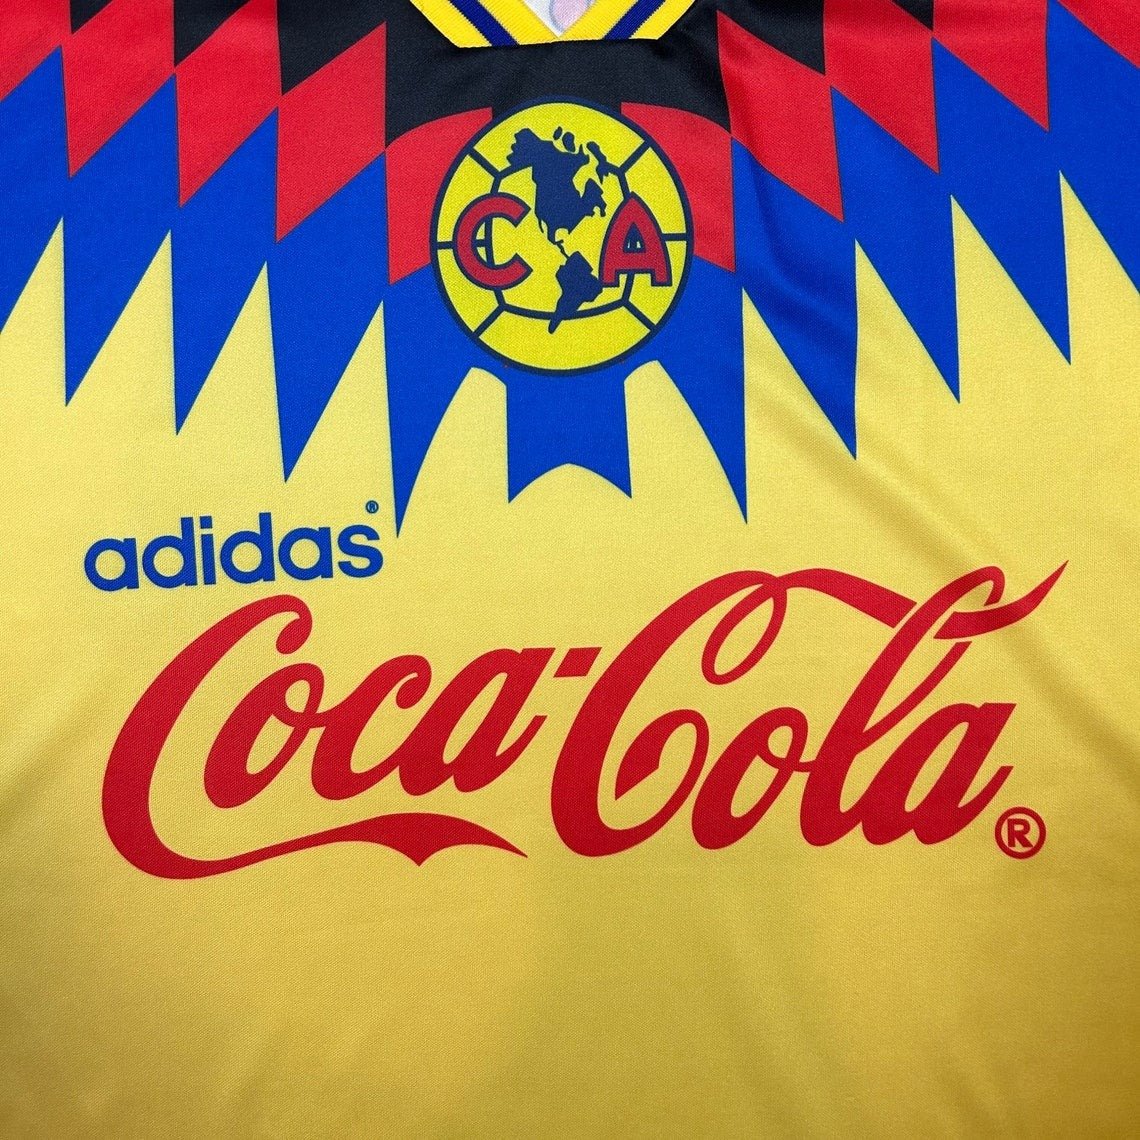 CLUB AMERICA 1995/98 HOME 'SOL' RETRO SHIRT - Shirt - False9Fits